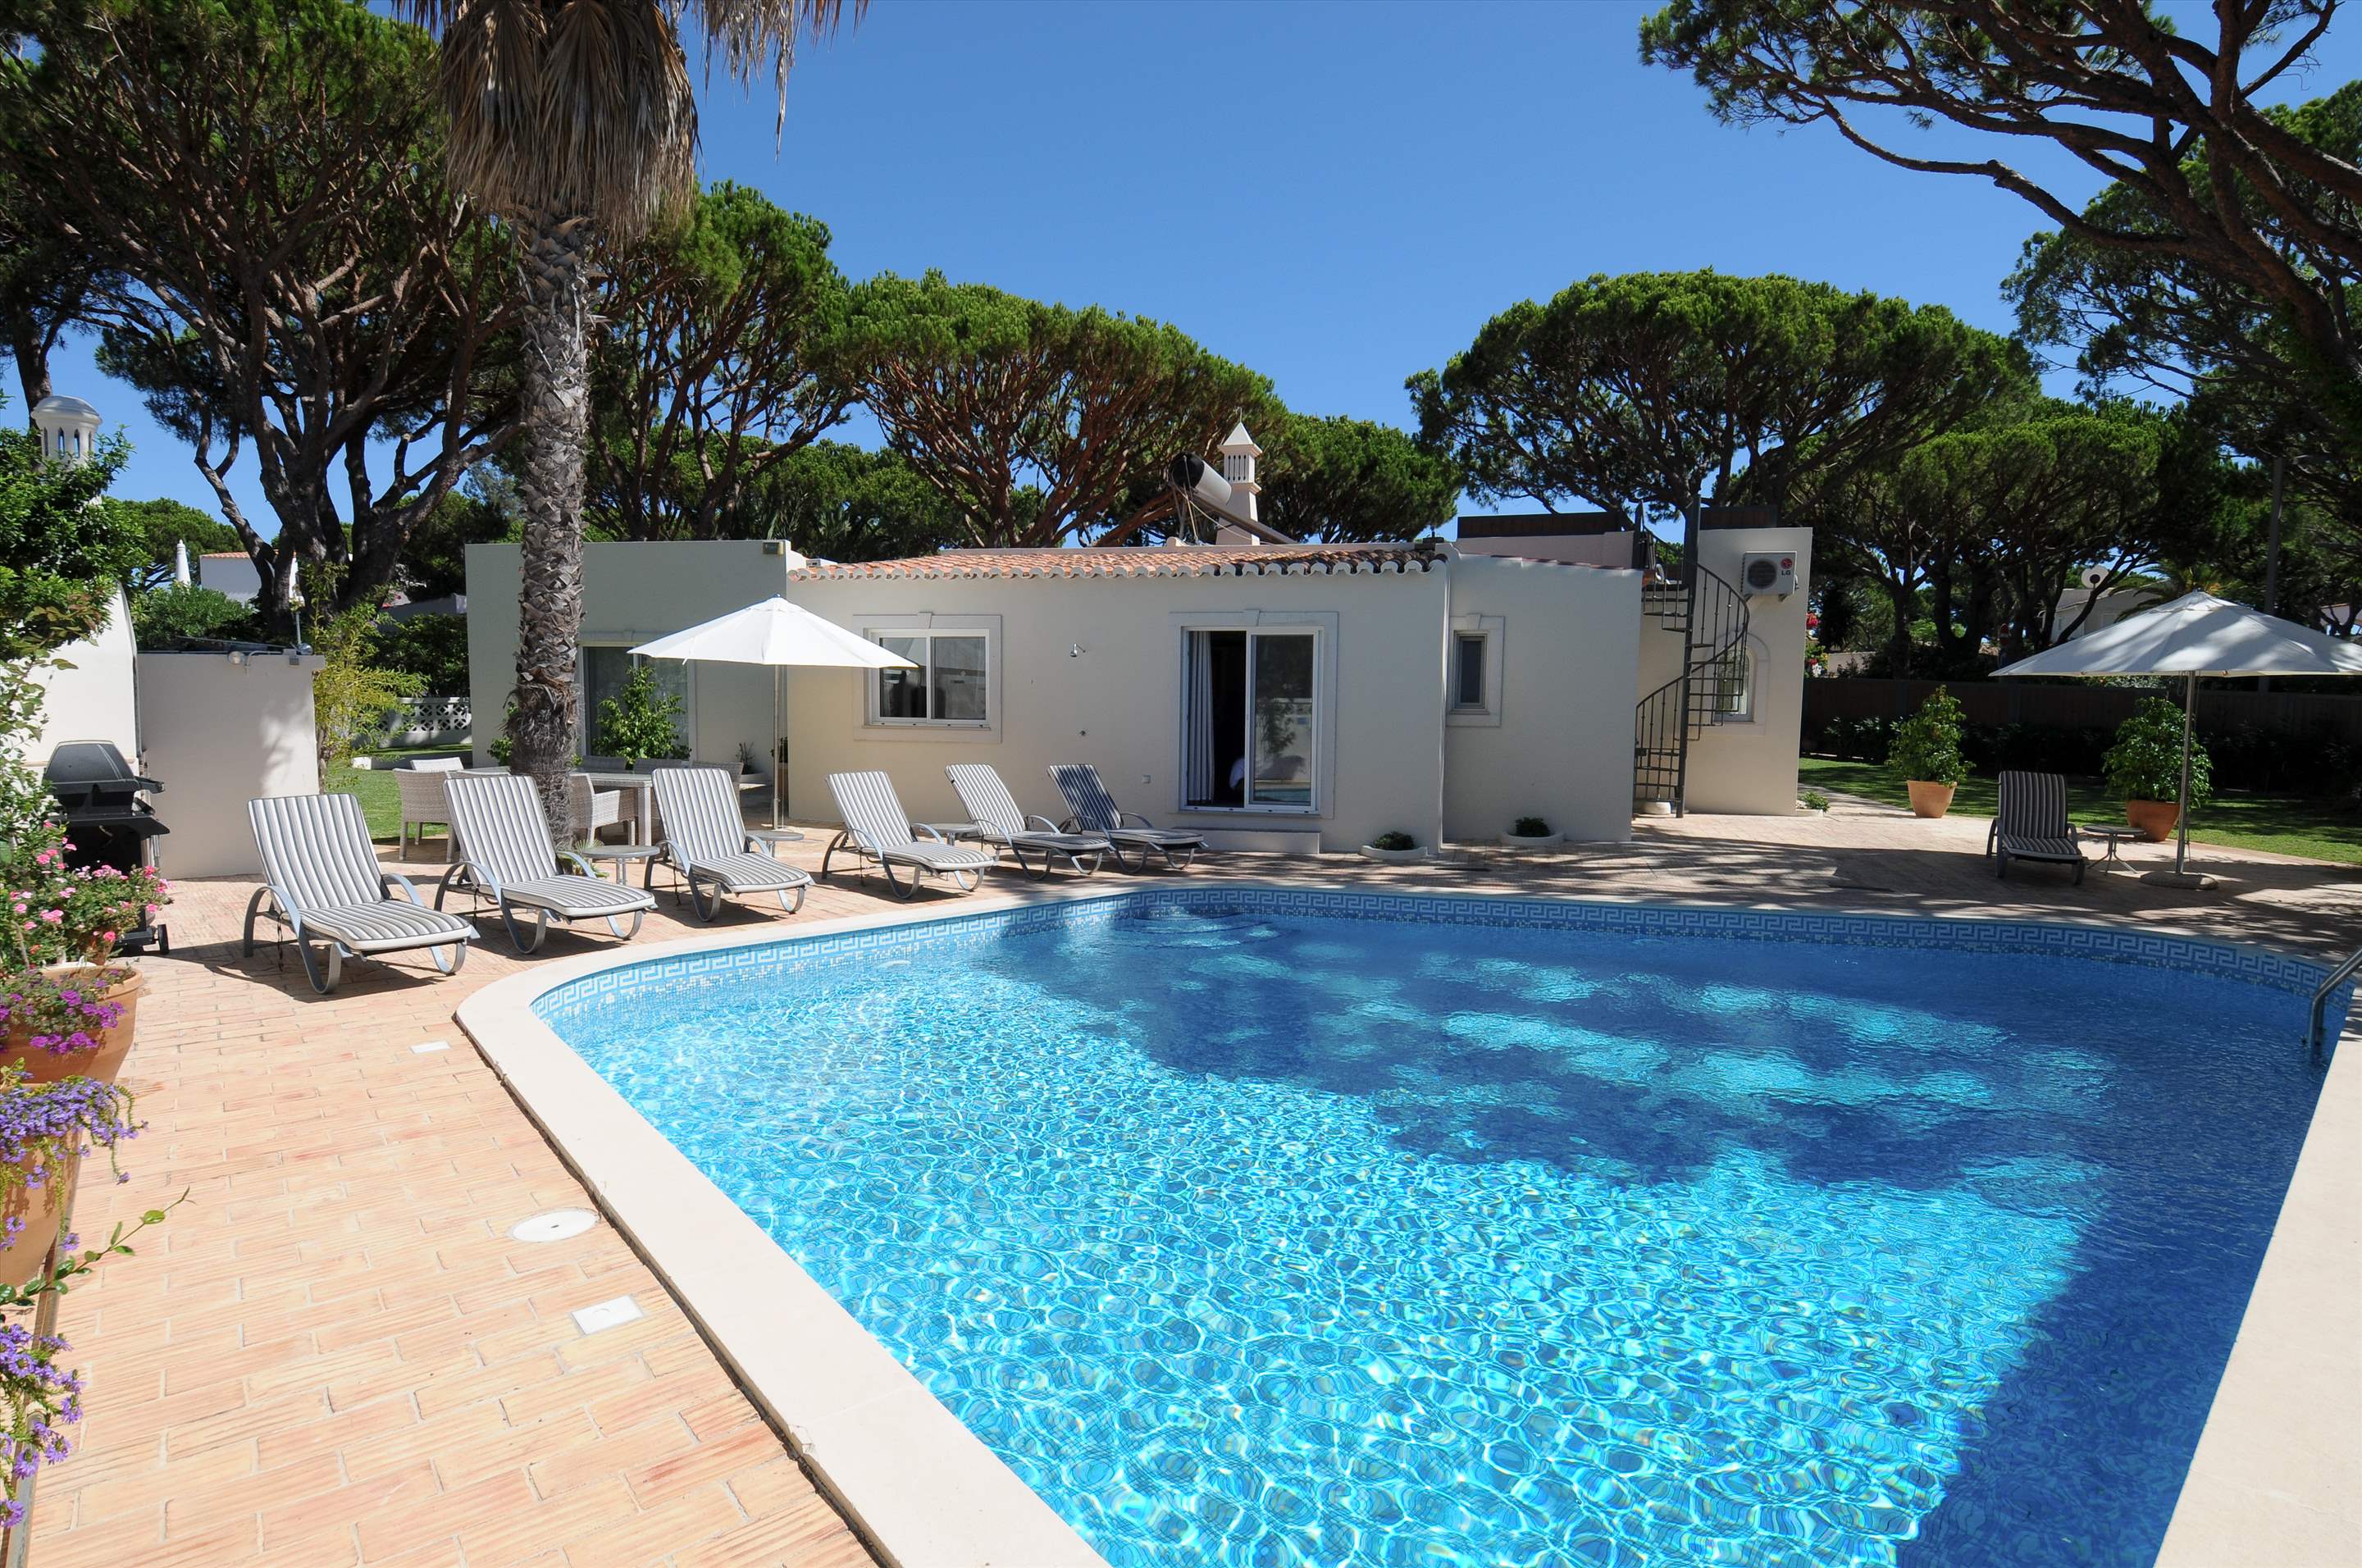 Casa Blanca, 4 Bed Rental, 4 bedroom villa in Vale do Lobo, Algarve Photo #1